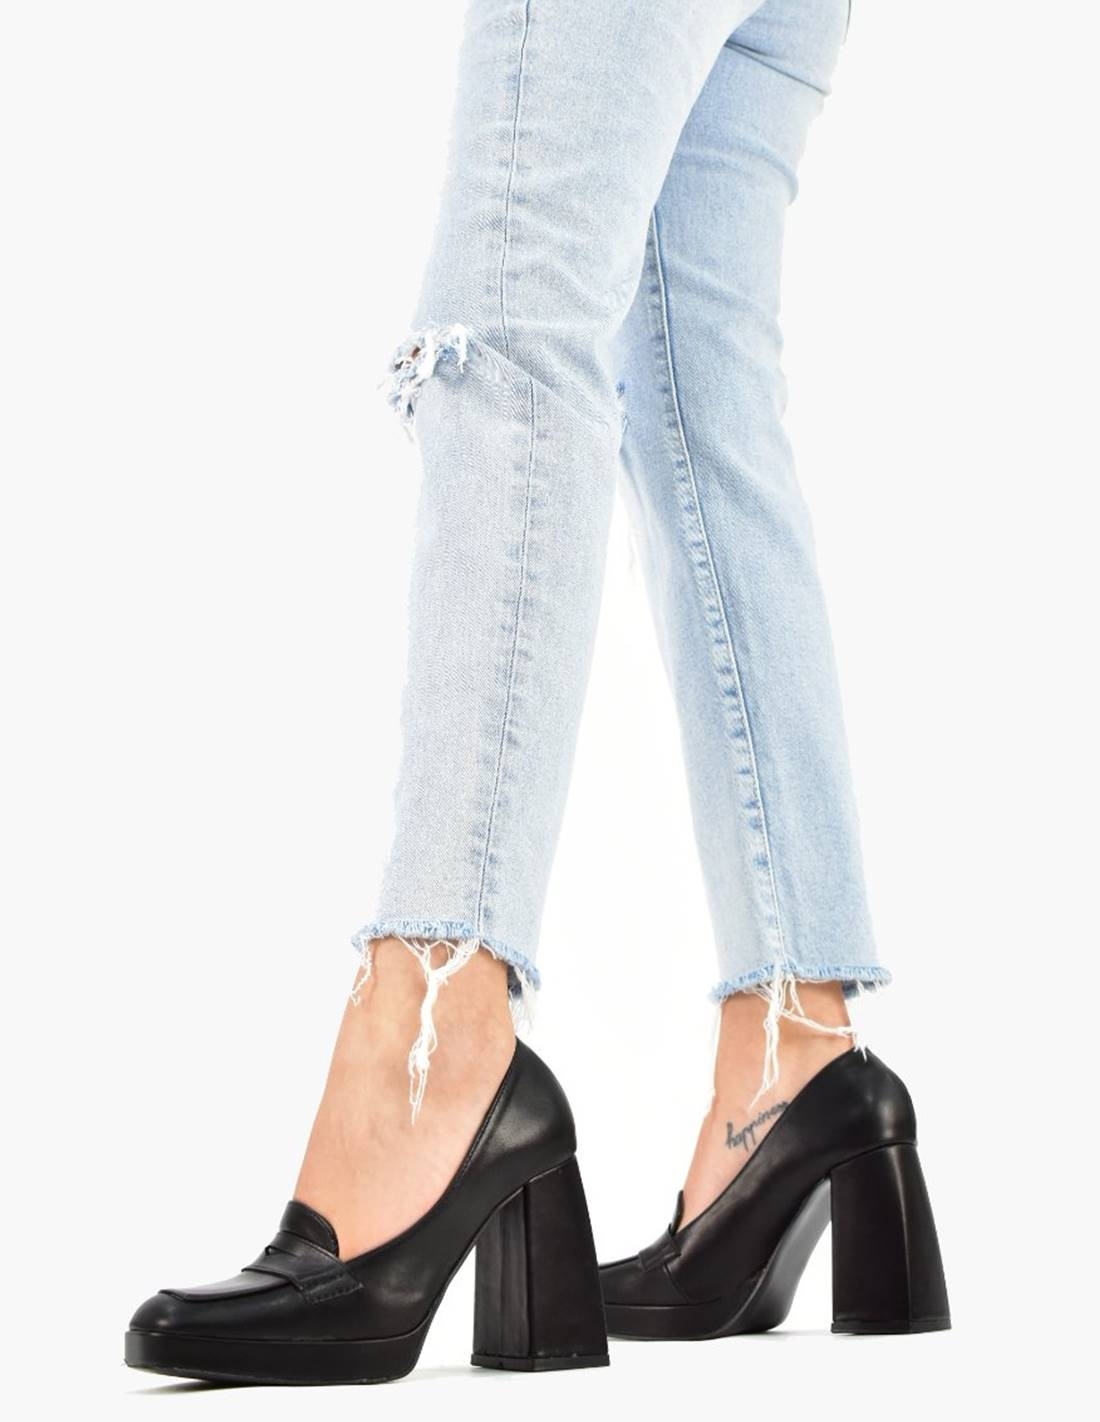 Zapato negro de Tacon Mujer | Calzados